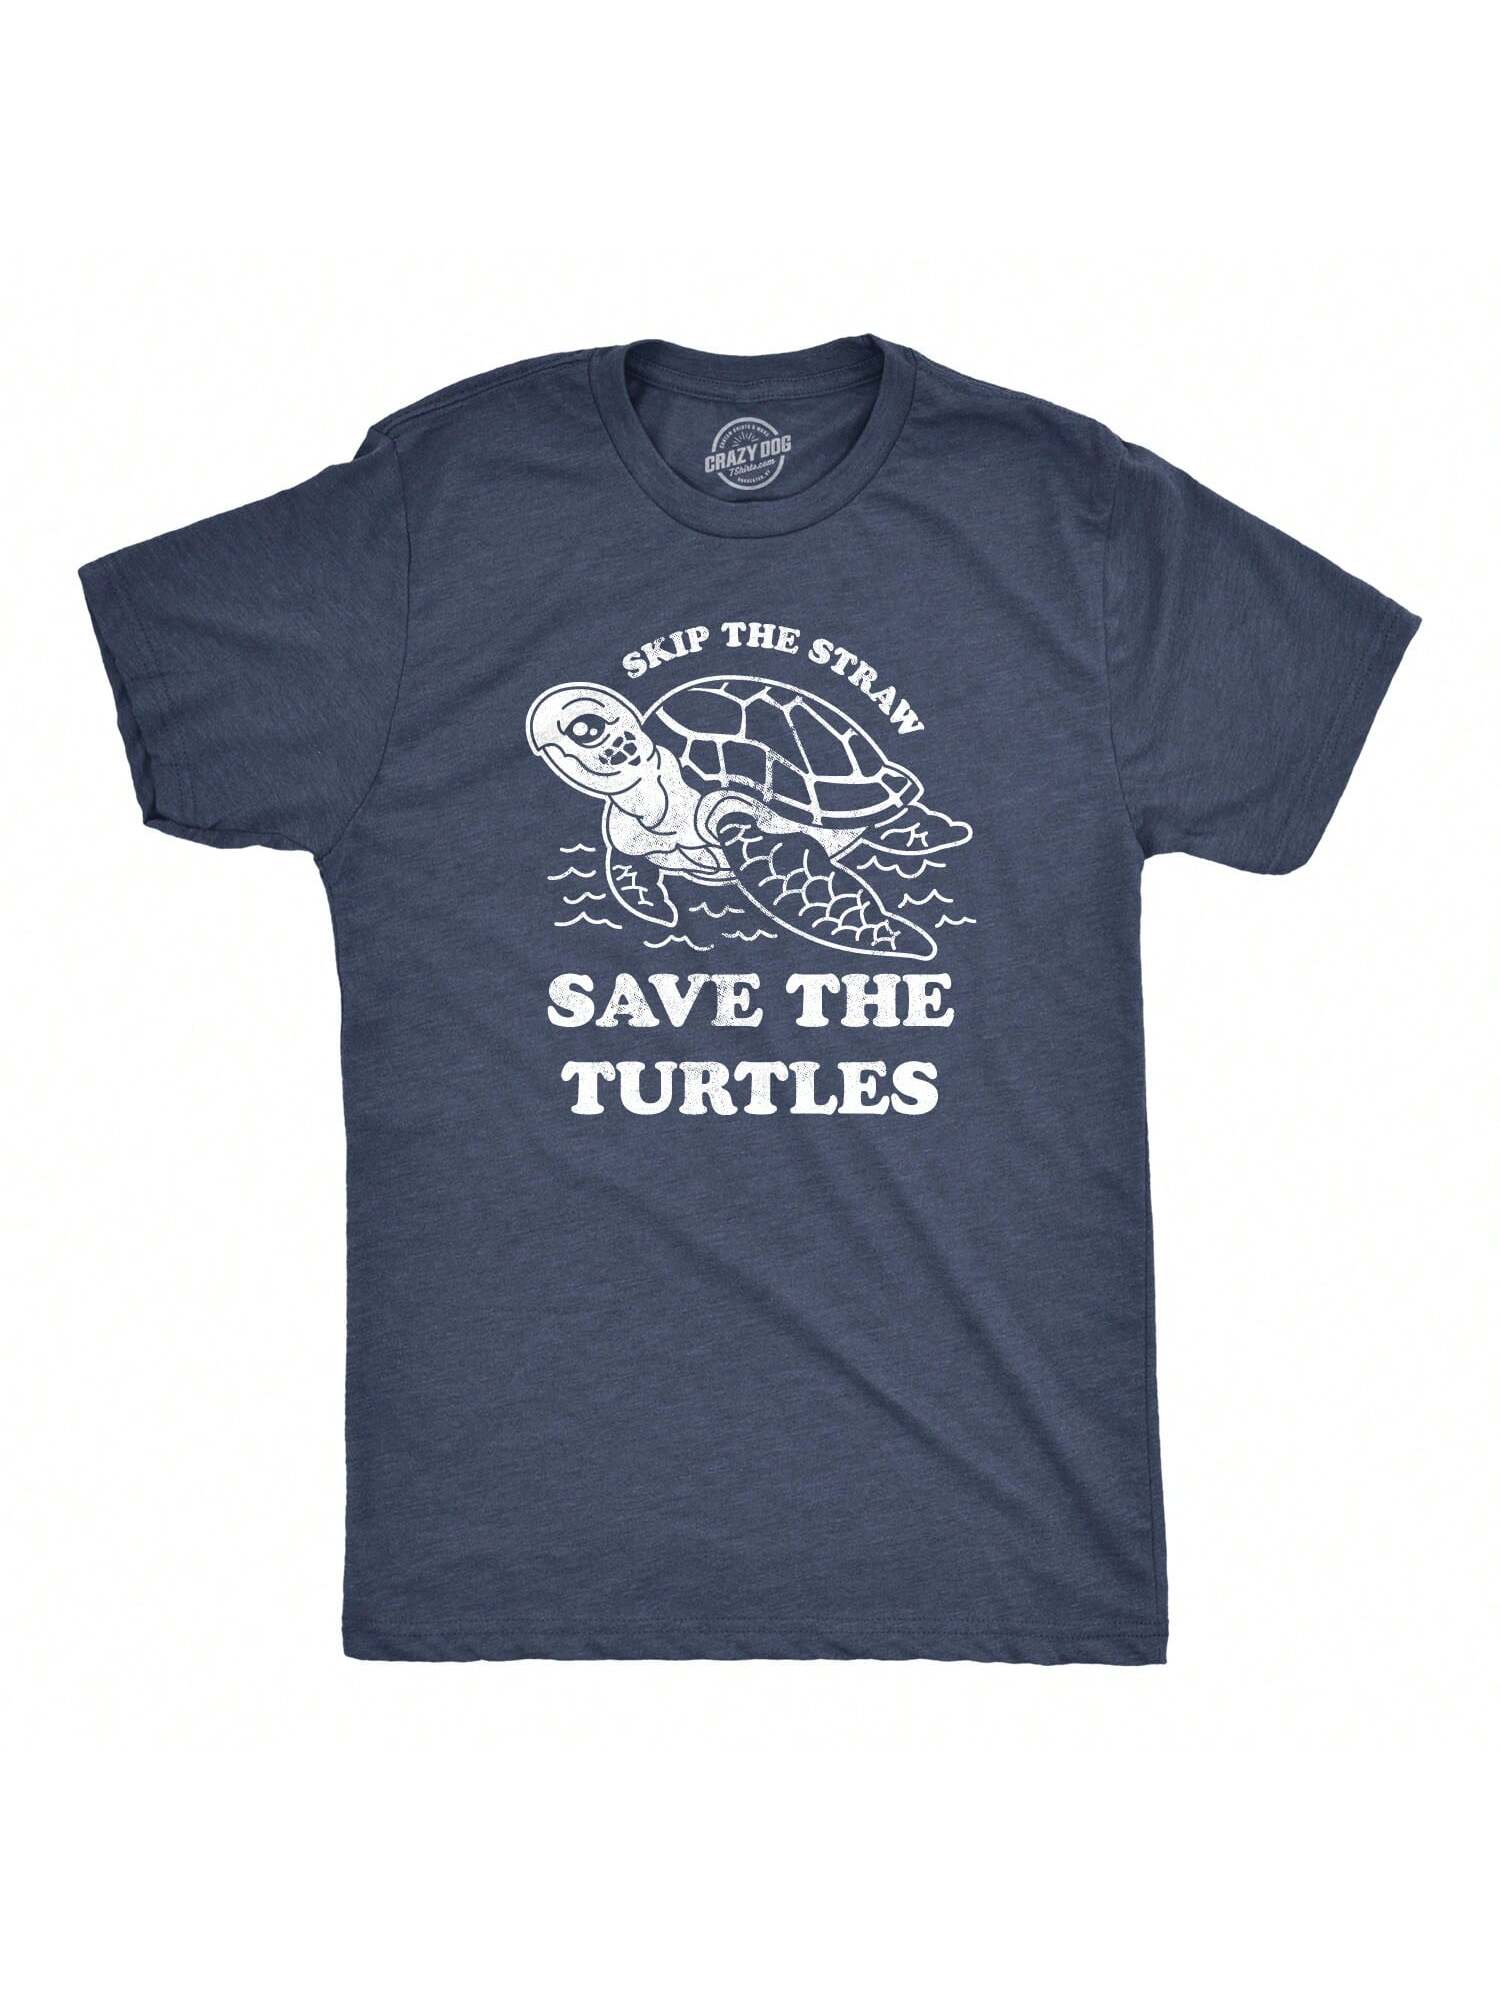 цена Мужская футболка Skip The Straw Save The Turtles с надписью «Экологическая осведомленность» (темно-синий Хизер)